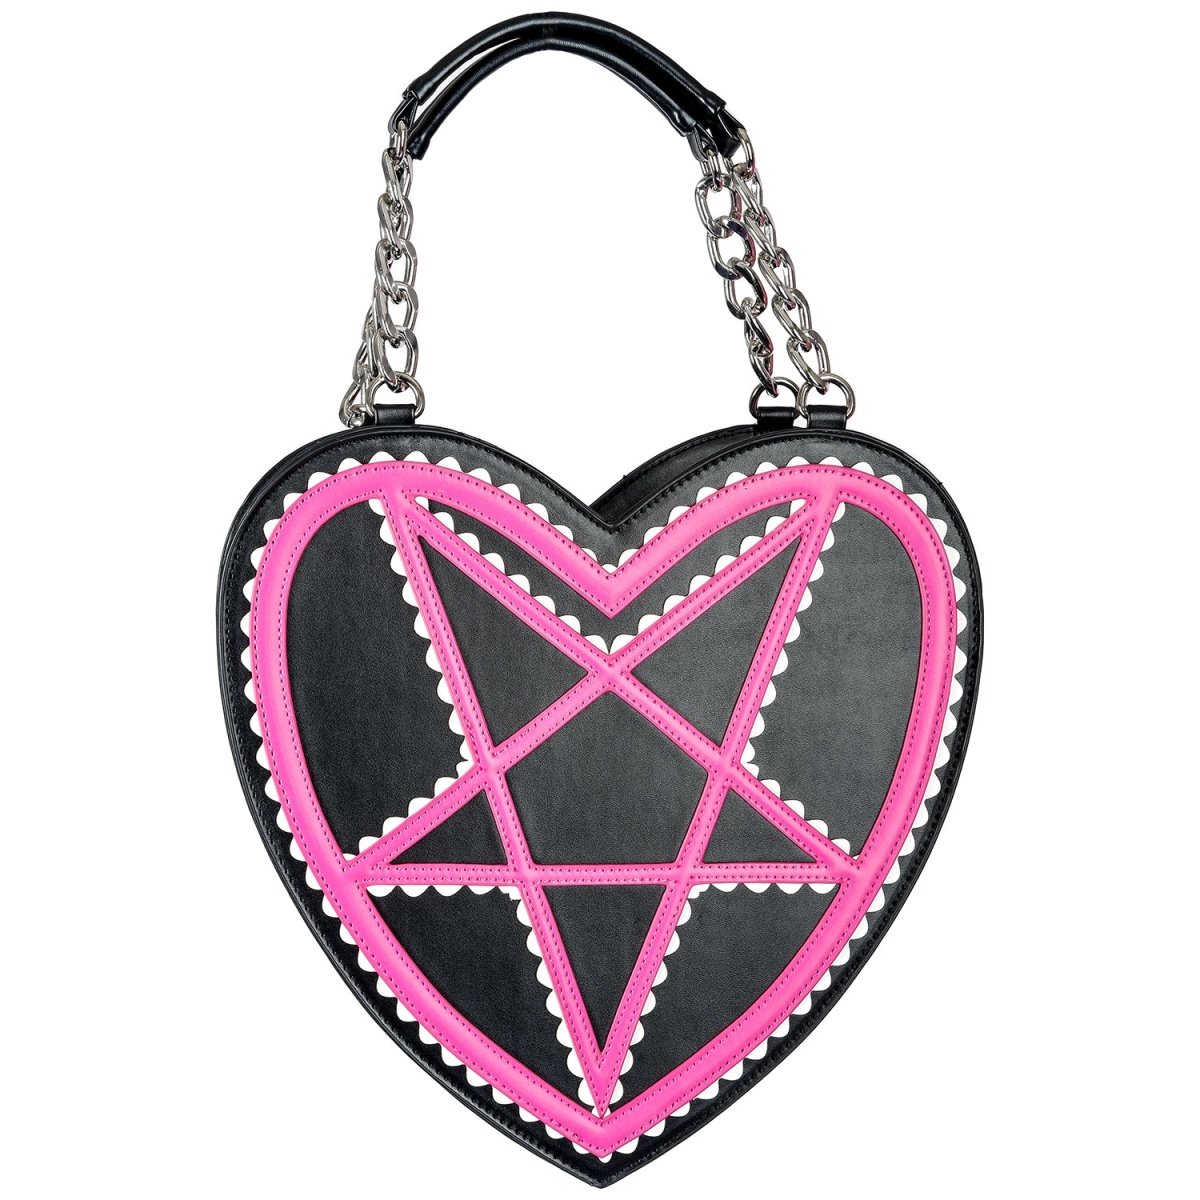 Too Fast Pentagram Heart Shaped Handbag